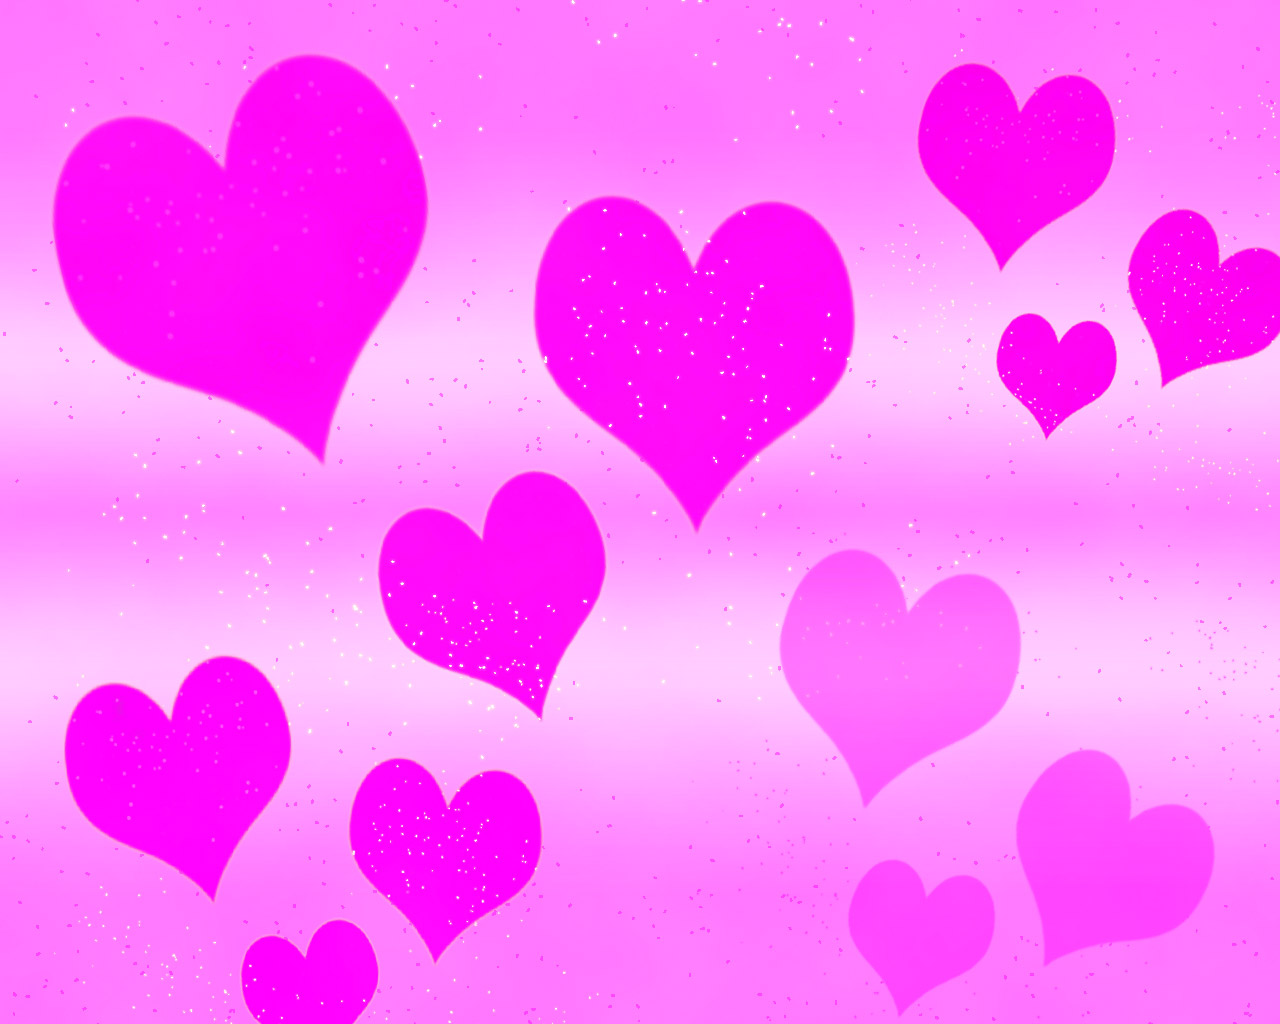 かわいいハートの壁紙,心臓,ピンク,紫の,バイオレット,愛